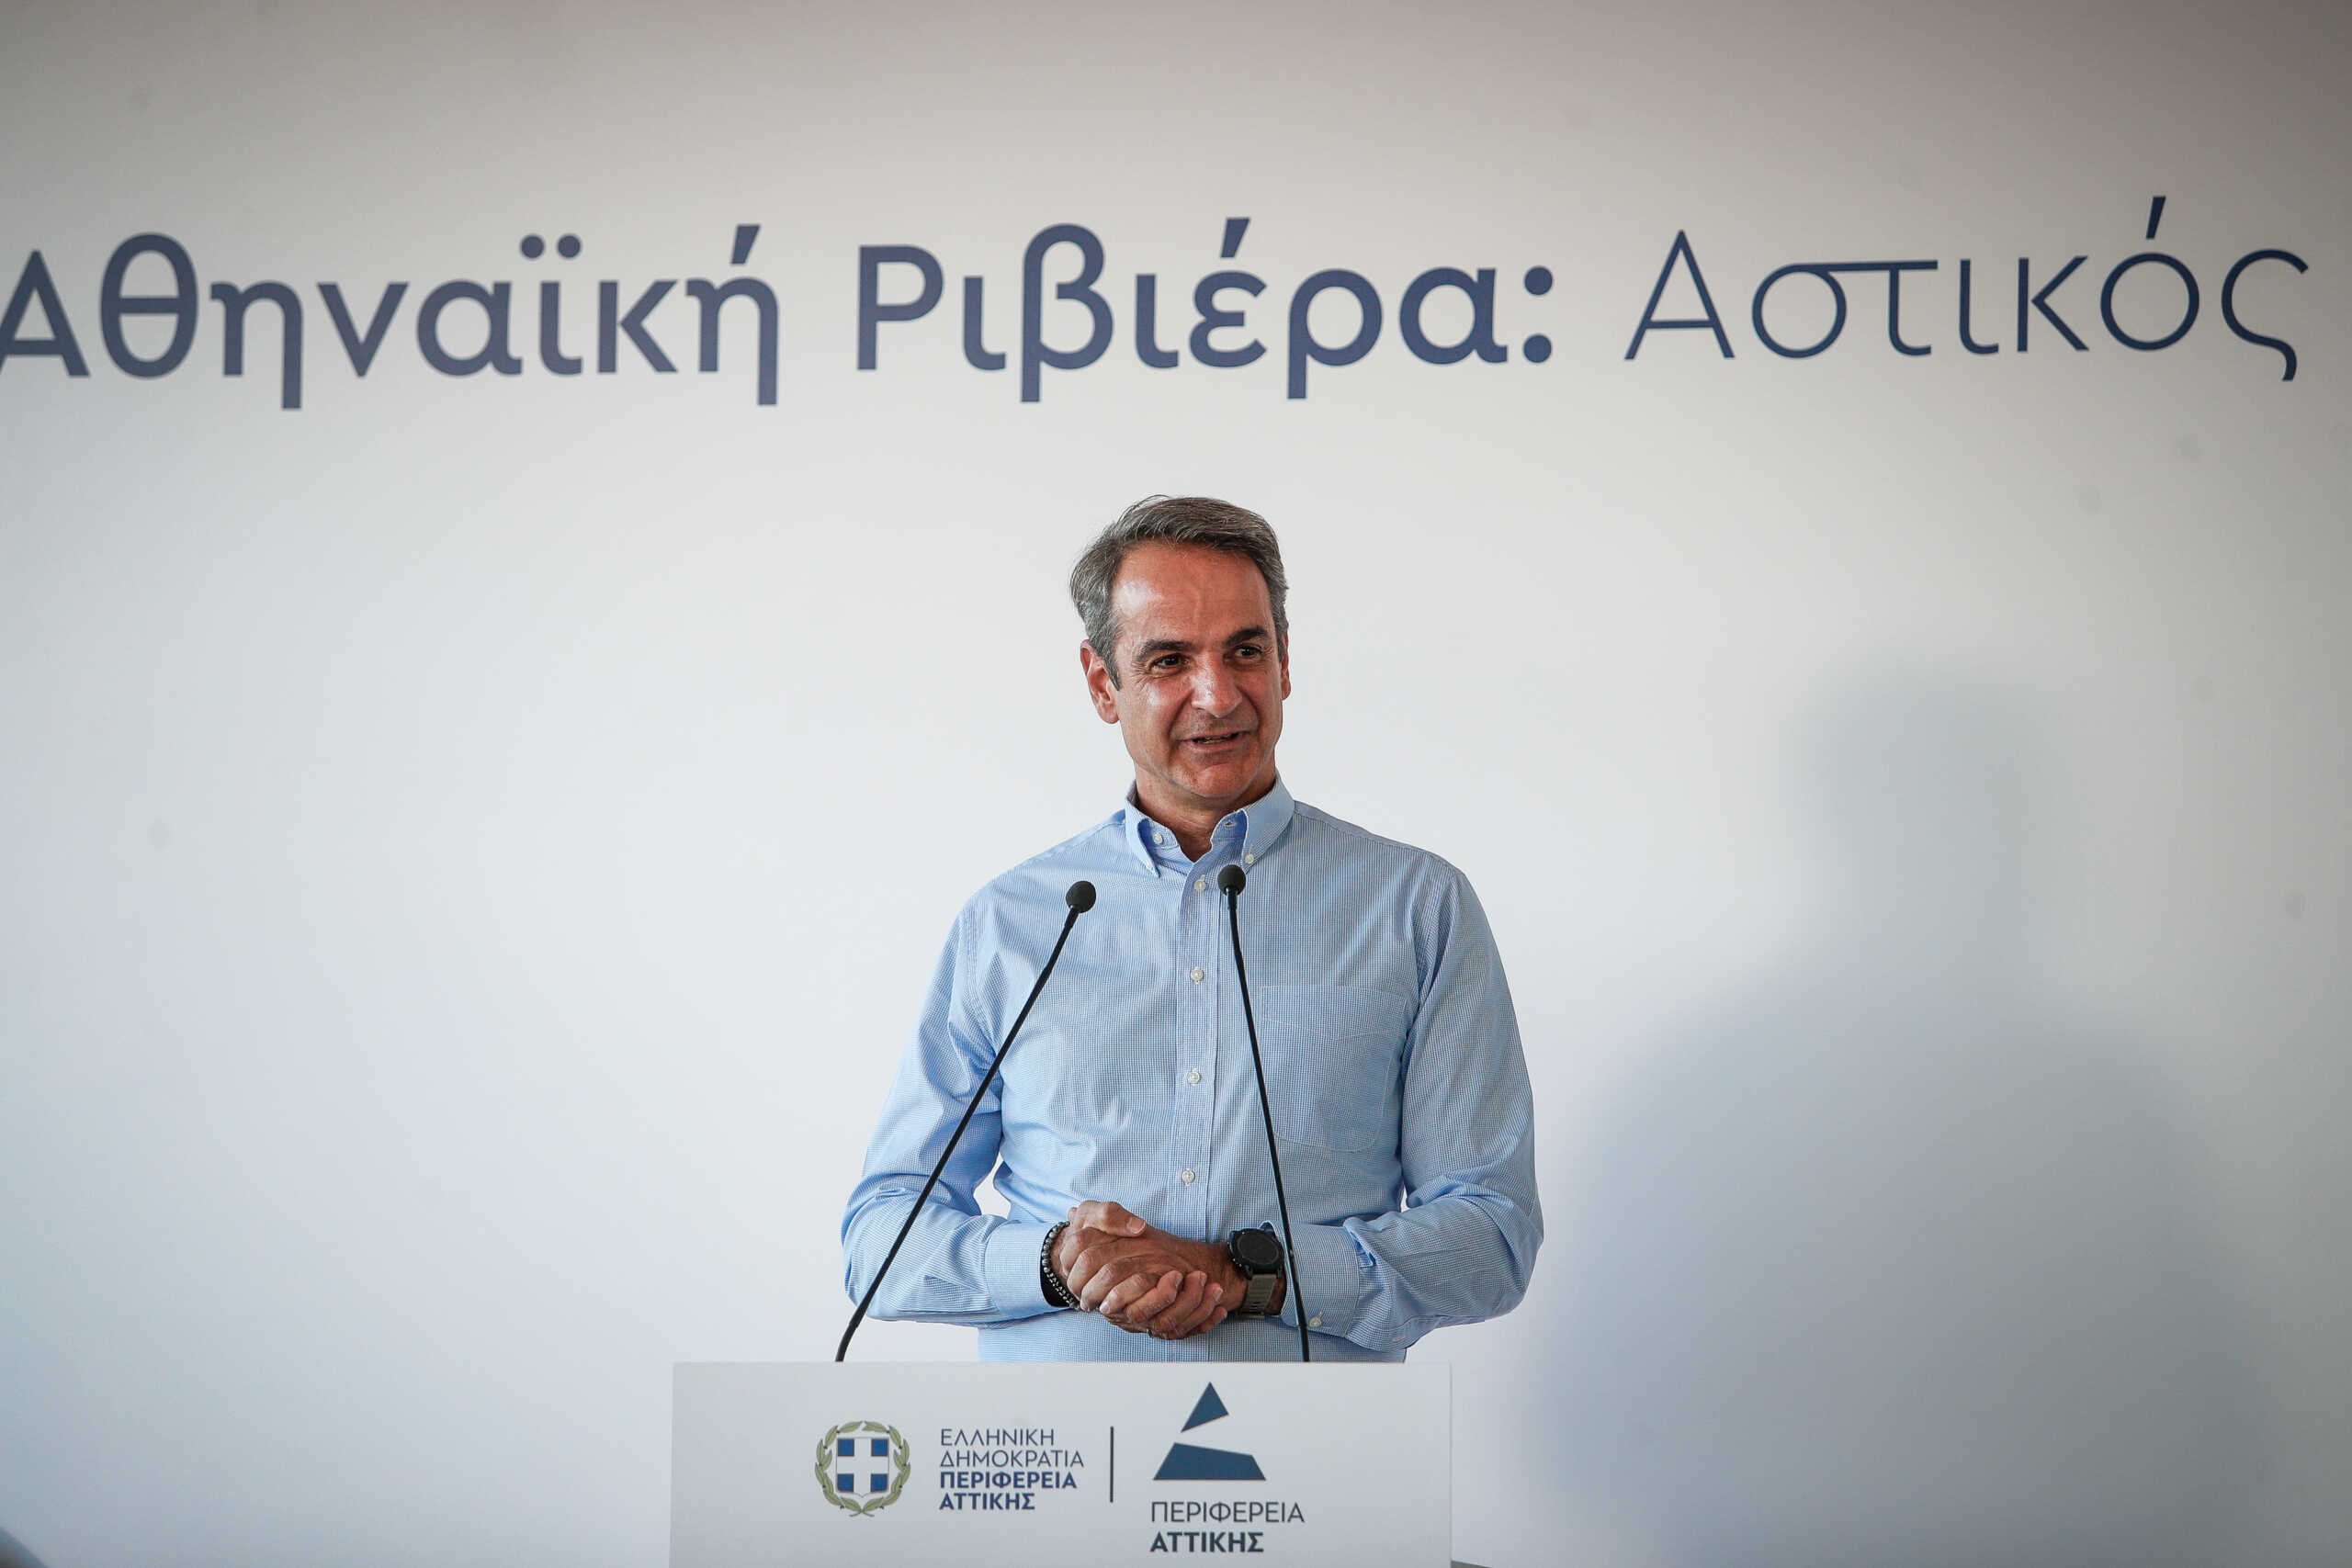 Μητσοτάκης για Αθηναϊκή Ριβιέρα: Τον Σεπτέμβριο του 2025 παραδίδεται το έργο